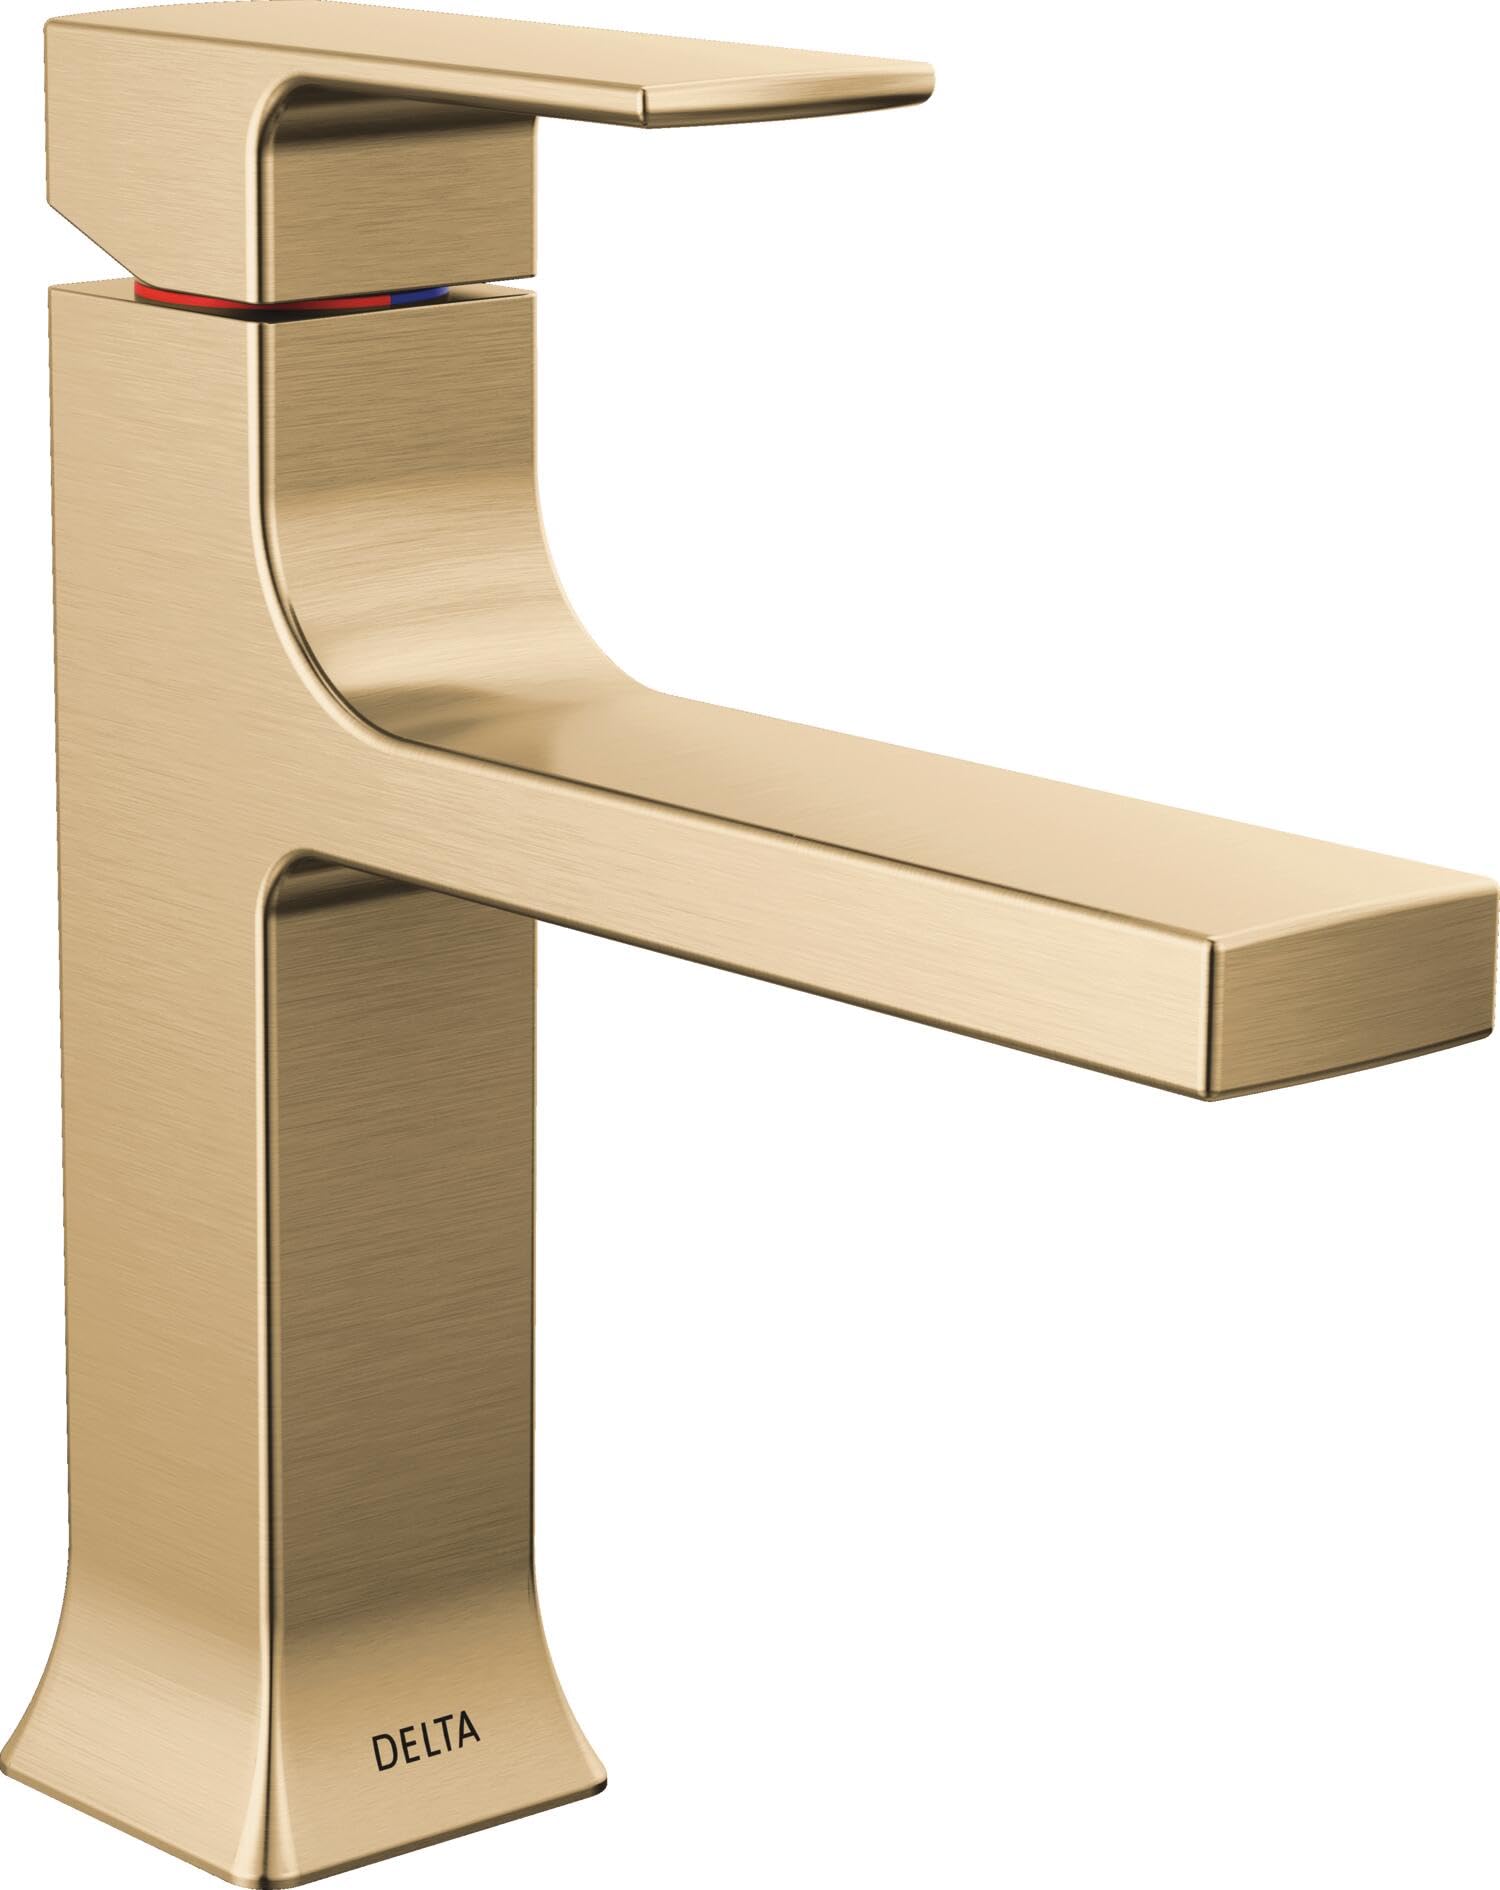 Delta Faucet Velum Single Hole Bathroom Faucet, Gold Bathroom Sink Faucet, Single Handle Bathroom Faucet, Bath Faucet, Pop-Up Drain Assembly, Champagne Bronze 537-CZMPU-DST